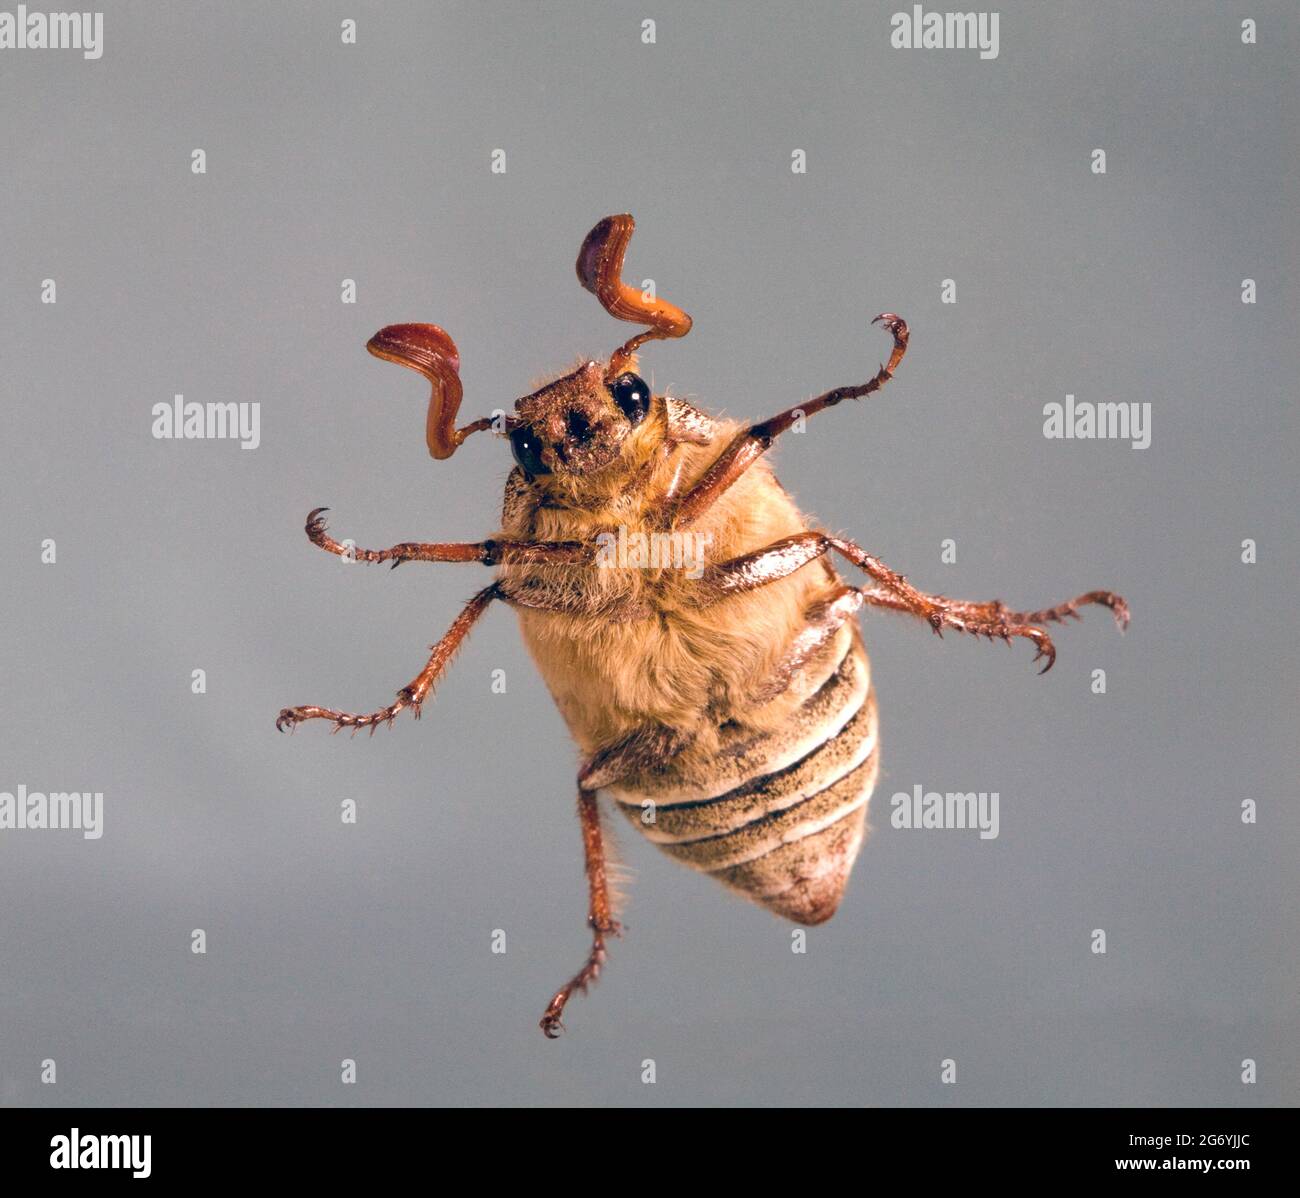 Détail d'un Beetle de juin à dix lignes mâles, Polyphylla decemlineata, un scarabée trouvé dans les États de l'Ouest. Celui-ci était dans le Pacifique non plus Banque D'Images